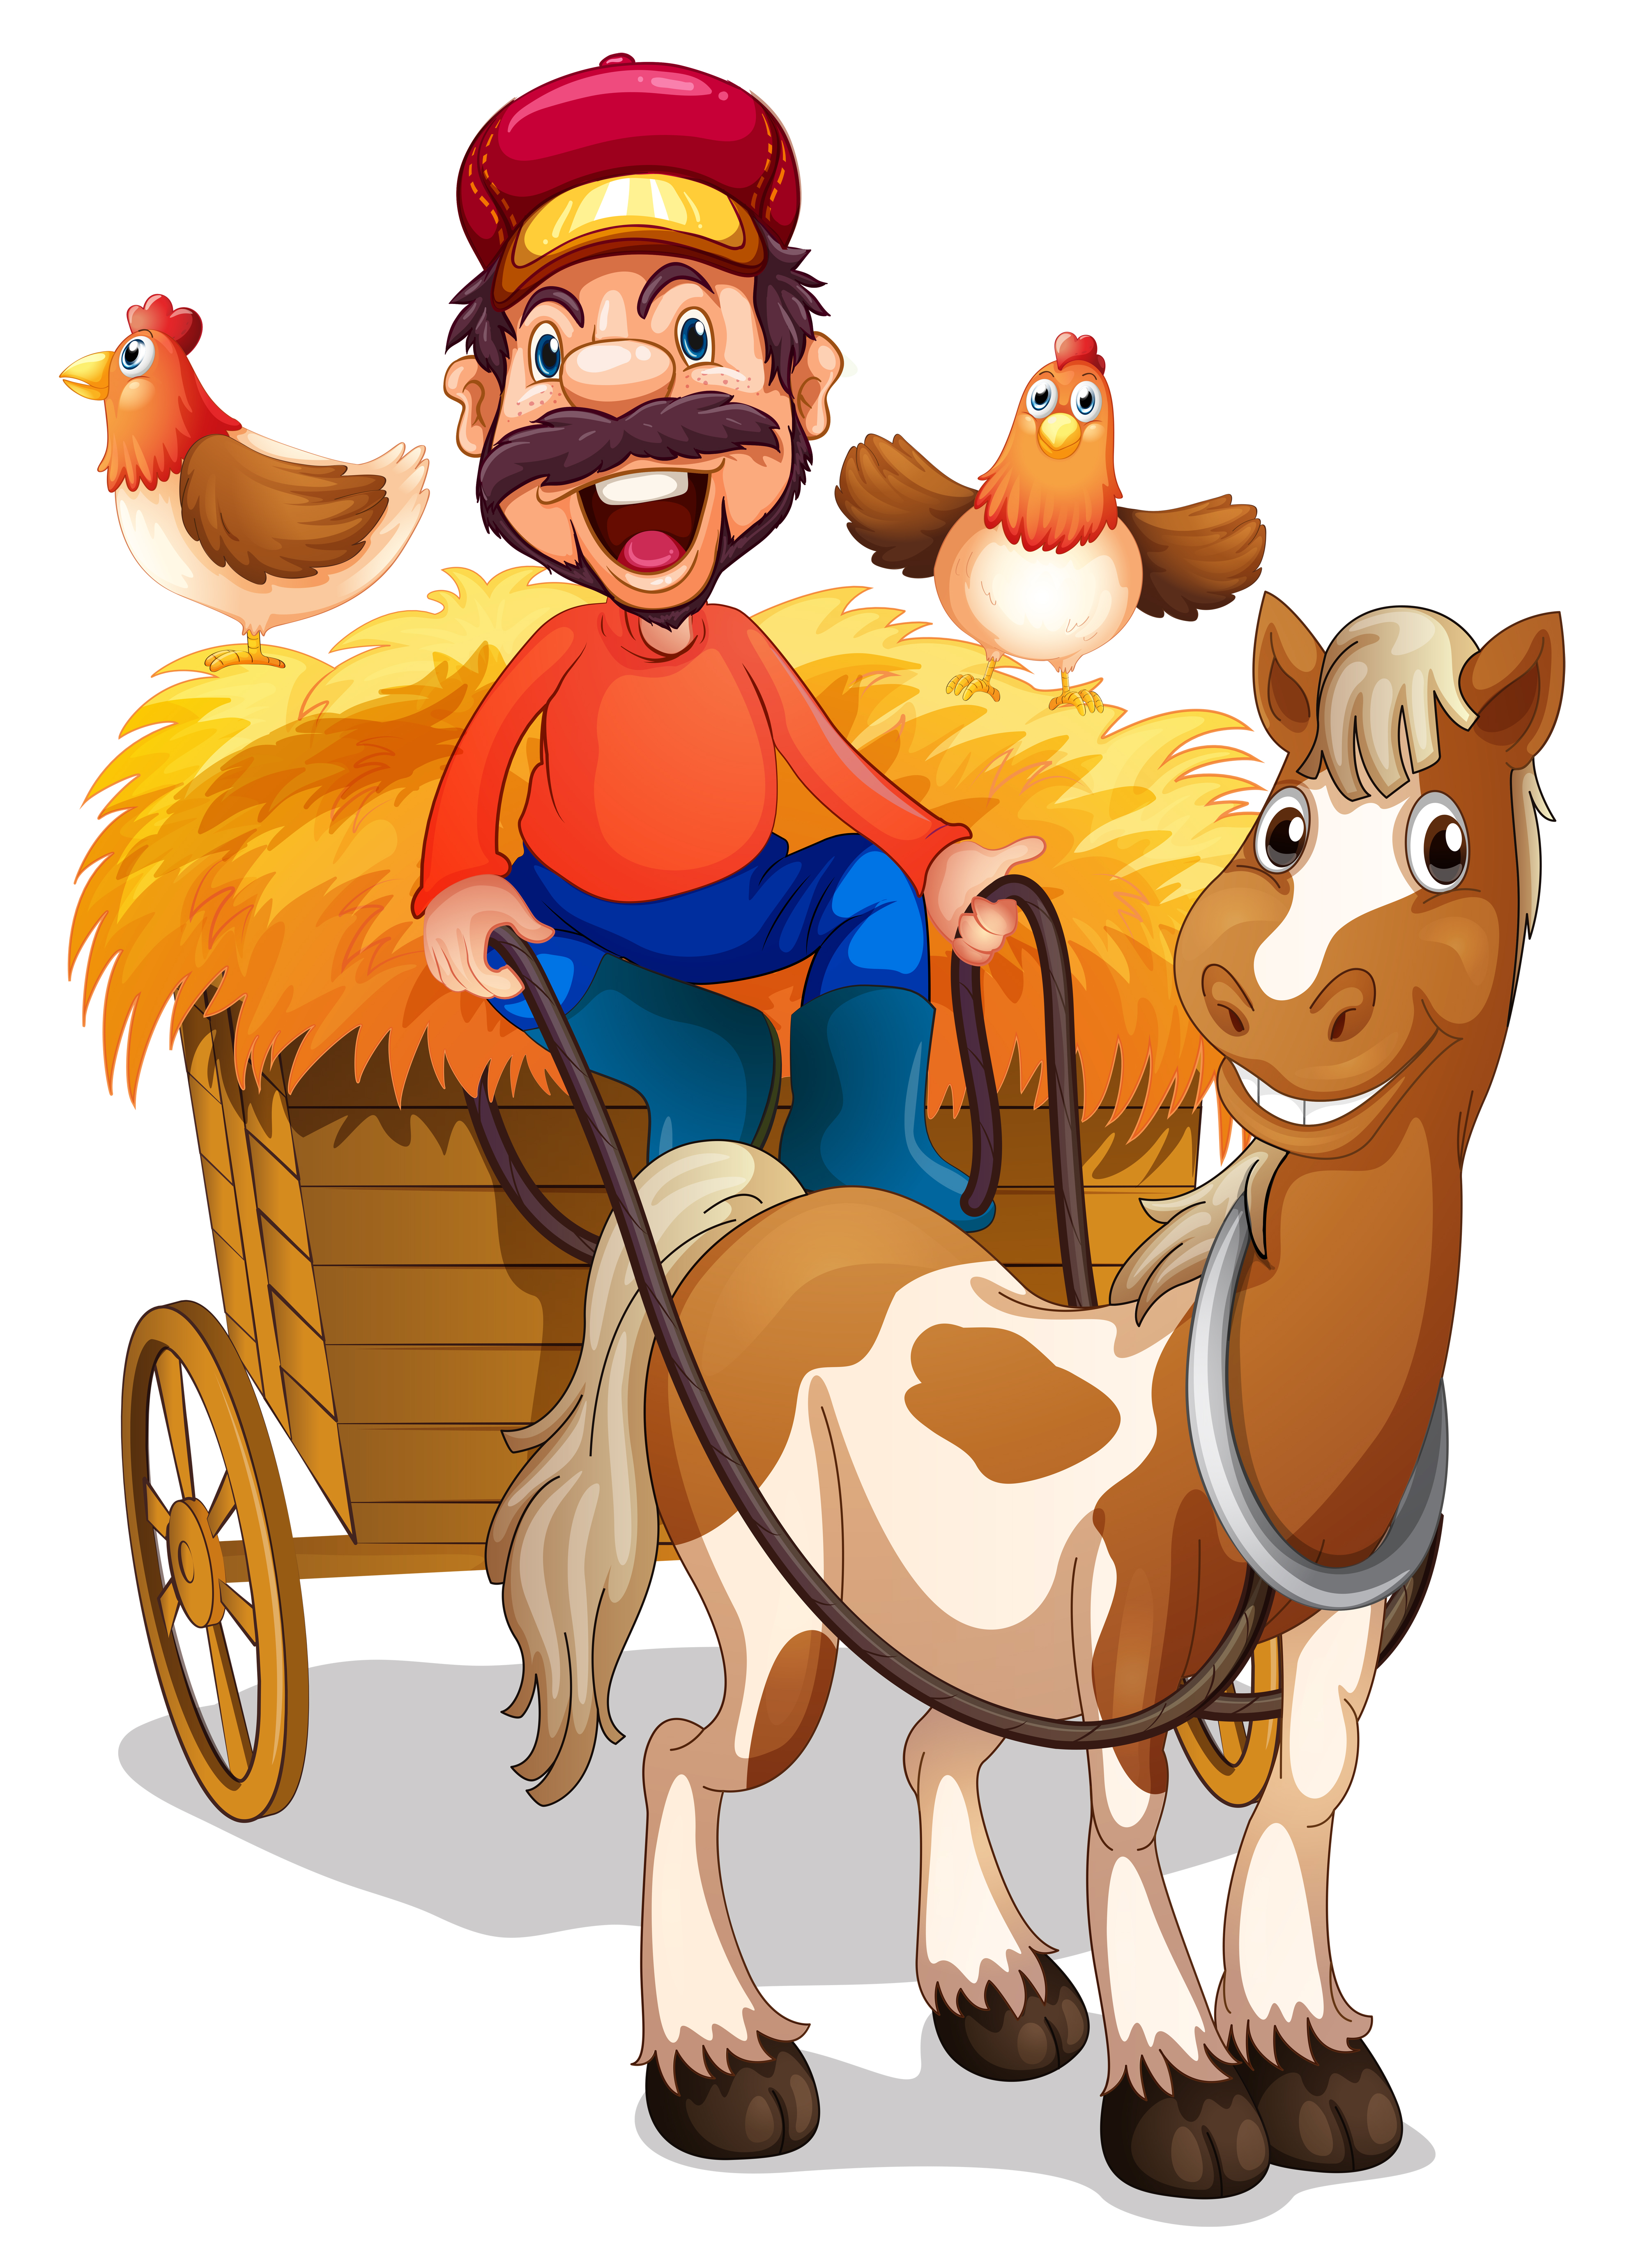 A farmer riding horse cart 373608 Vector Art at Vecteezy